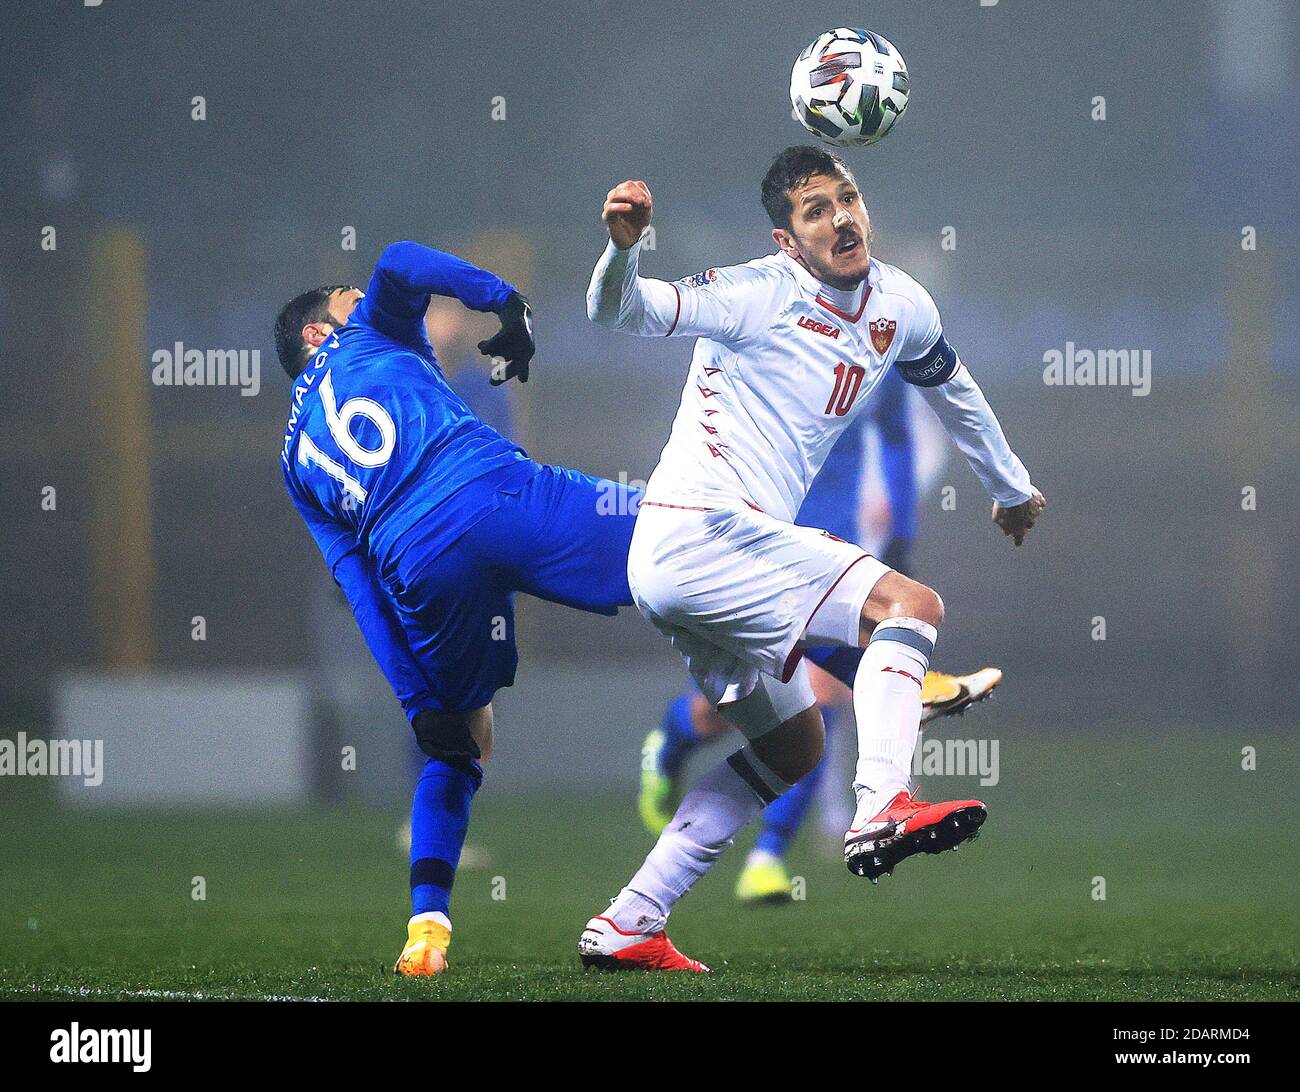 (201115) -- ZAPRESIC, 15 novembre 2020 (Xinhua) -- Stevan Jovetic (R) du Monténégro rivalise avec Elvin Jamalov de l'Azerbaïdjan lors de leur match de football de la Ligue des Nations de l'UEFA à Zapresic, Croatie, 14 novembre 2020. (Goran Stanzl/Pixsell via Xinhua) Banque D'Images